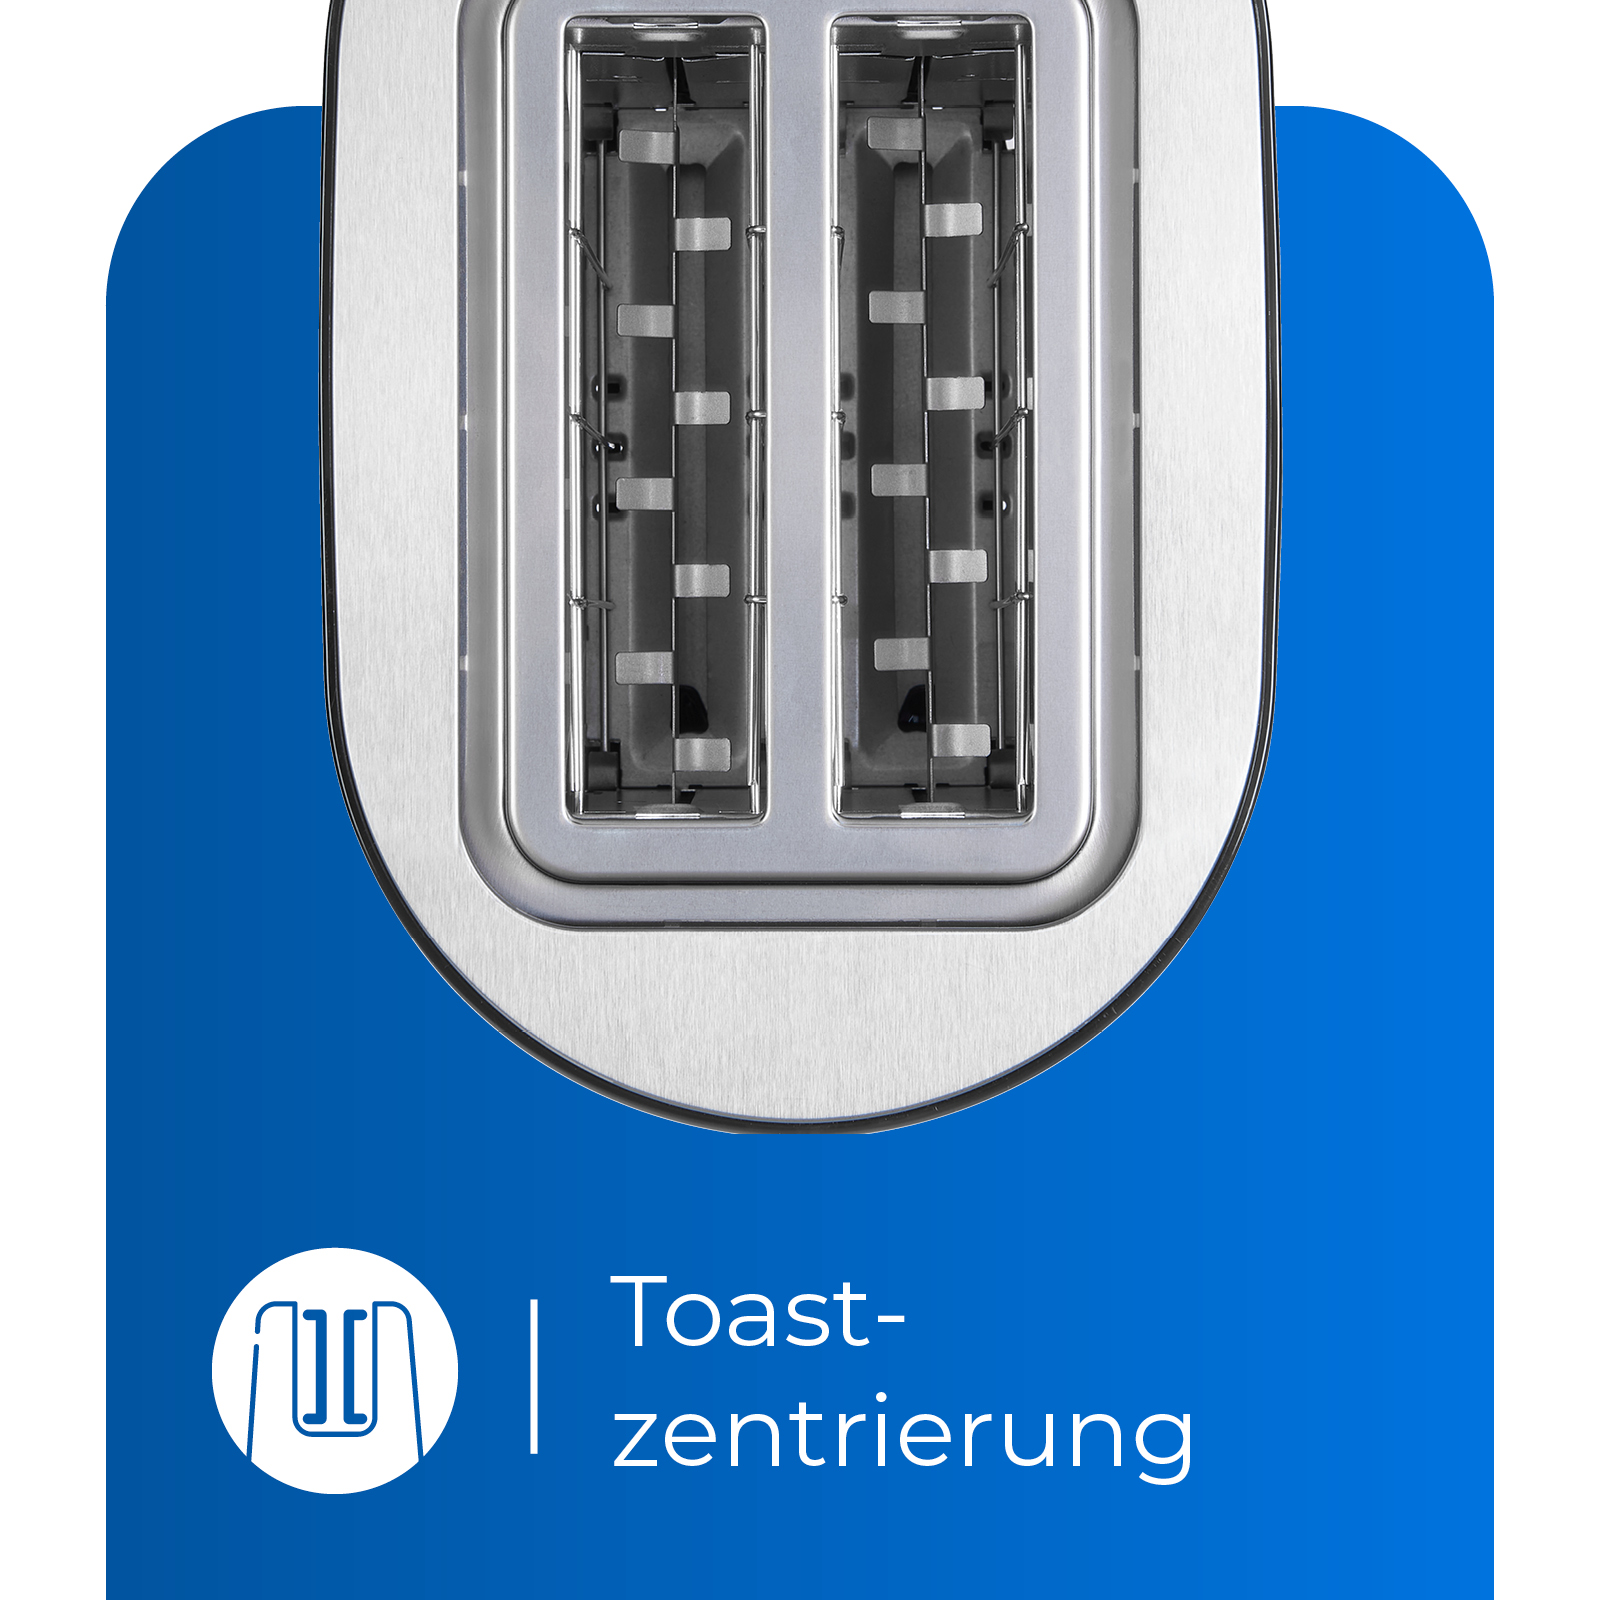 Watt, 6103 2) TA (850 EXQUISIT Toaster Schlitze: Schwarz swi